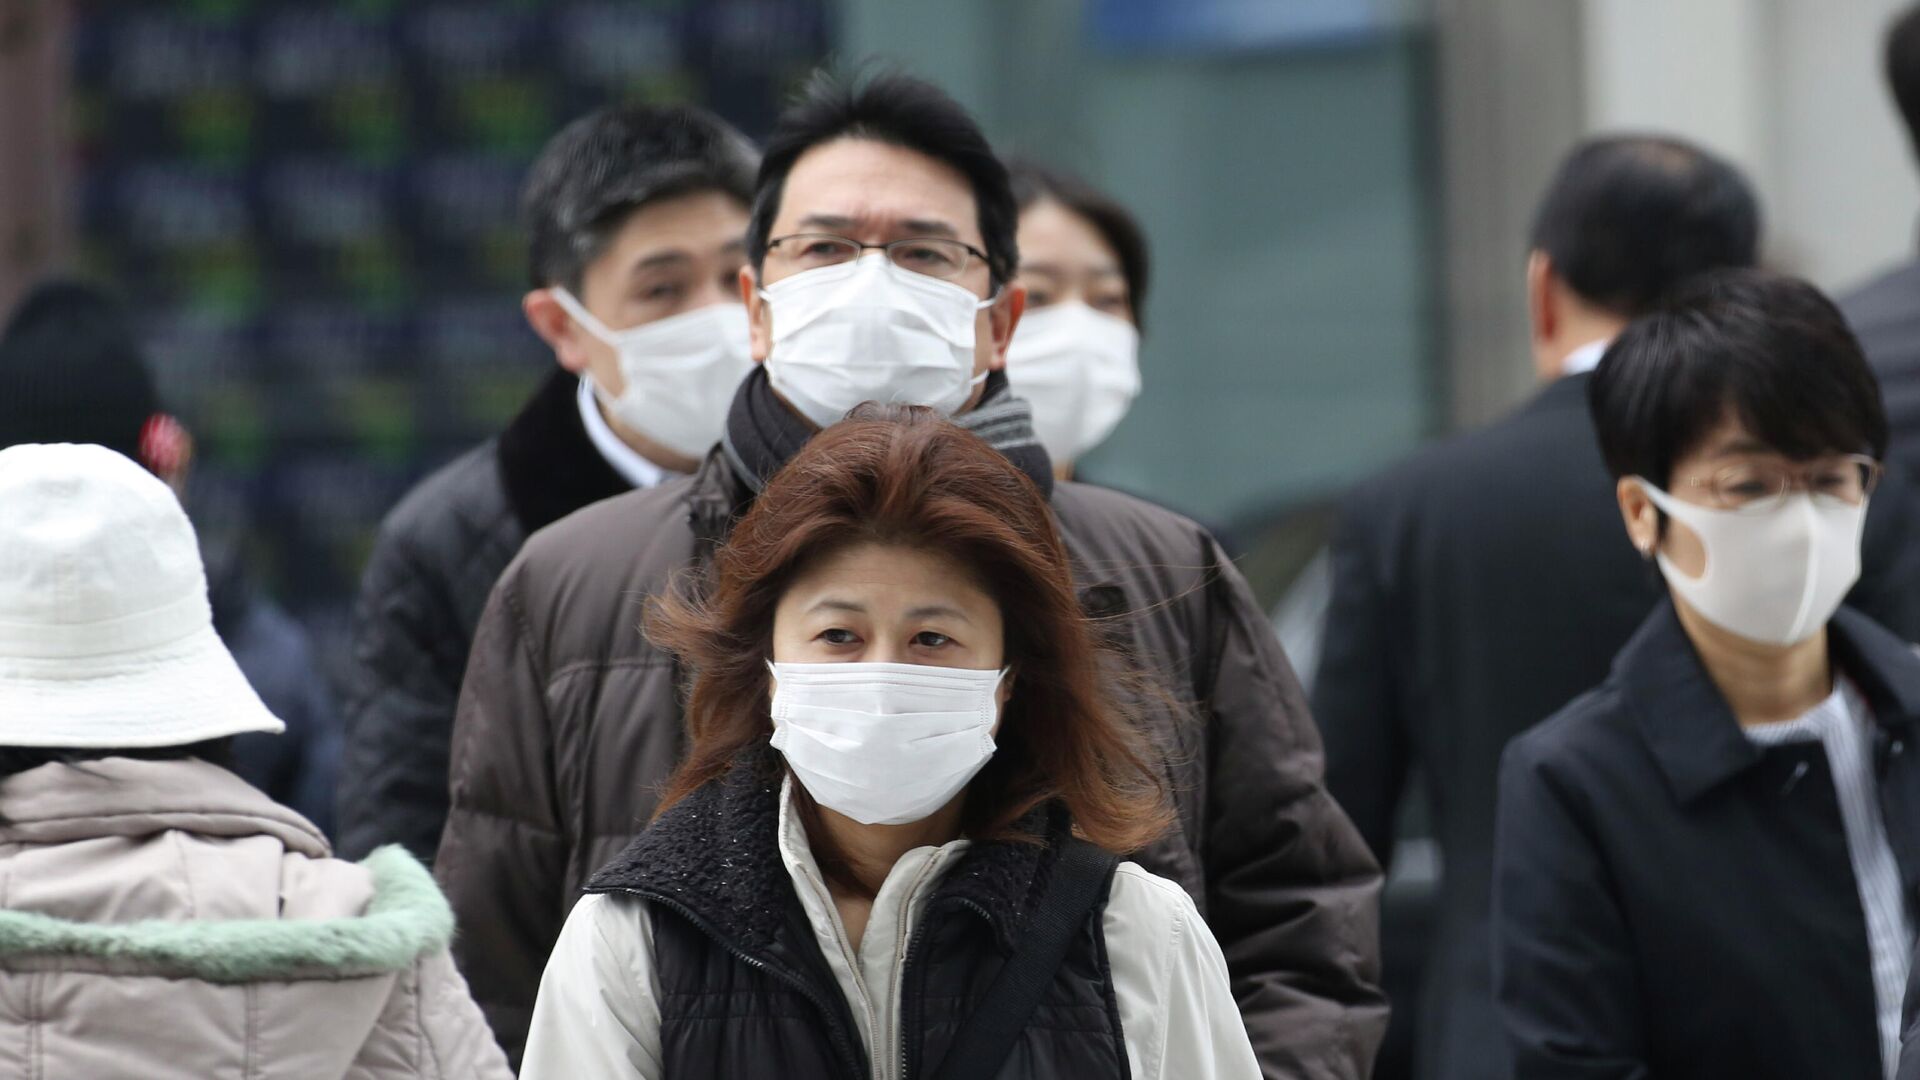 Прохожие в защитных масках на улице Токио, Япония. 17 февраля 2020 - РИА Новости, 1920, 29.11.2020